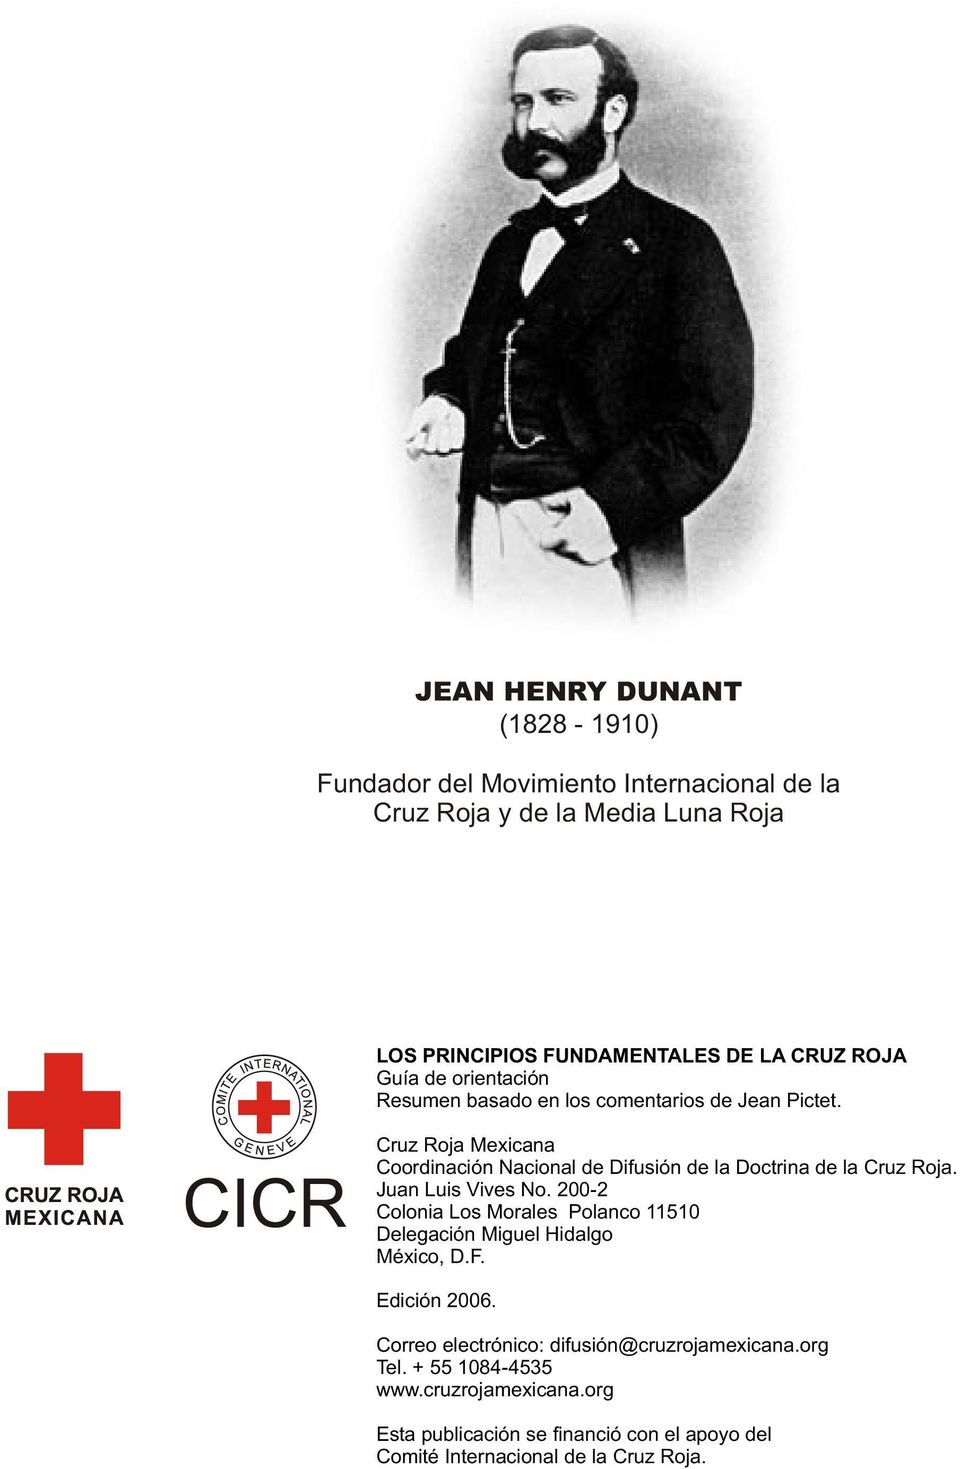 Cruz Roja Mexicana Coordinación Nacional de Difusión de la Doctrina de la Cruz Roja. Juan Luis Vives No.